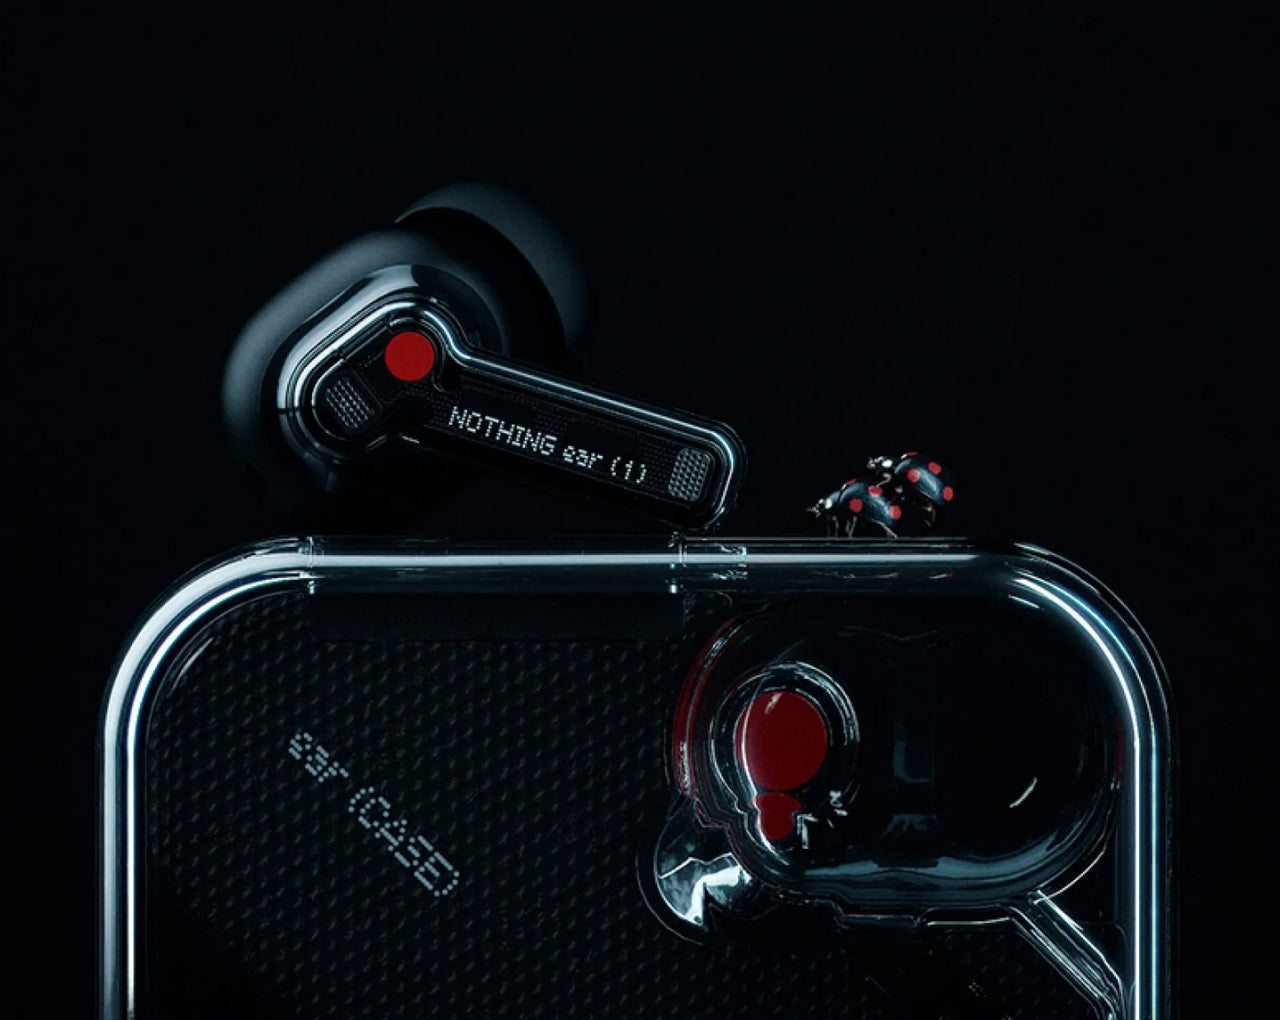 Ear 1: Nothing presenta sus primeros auriculares inalámbricos transparentes  con 25 horas de autonomía